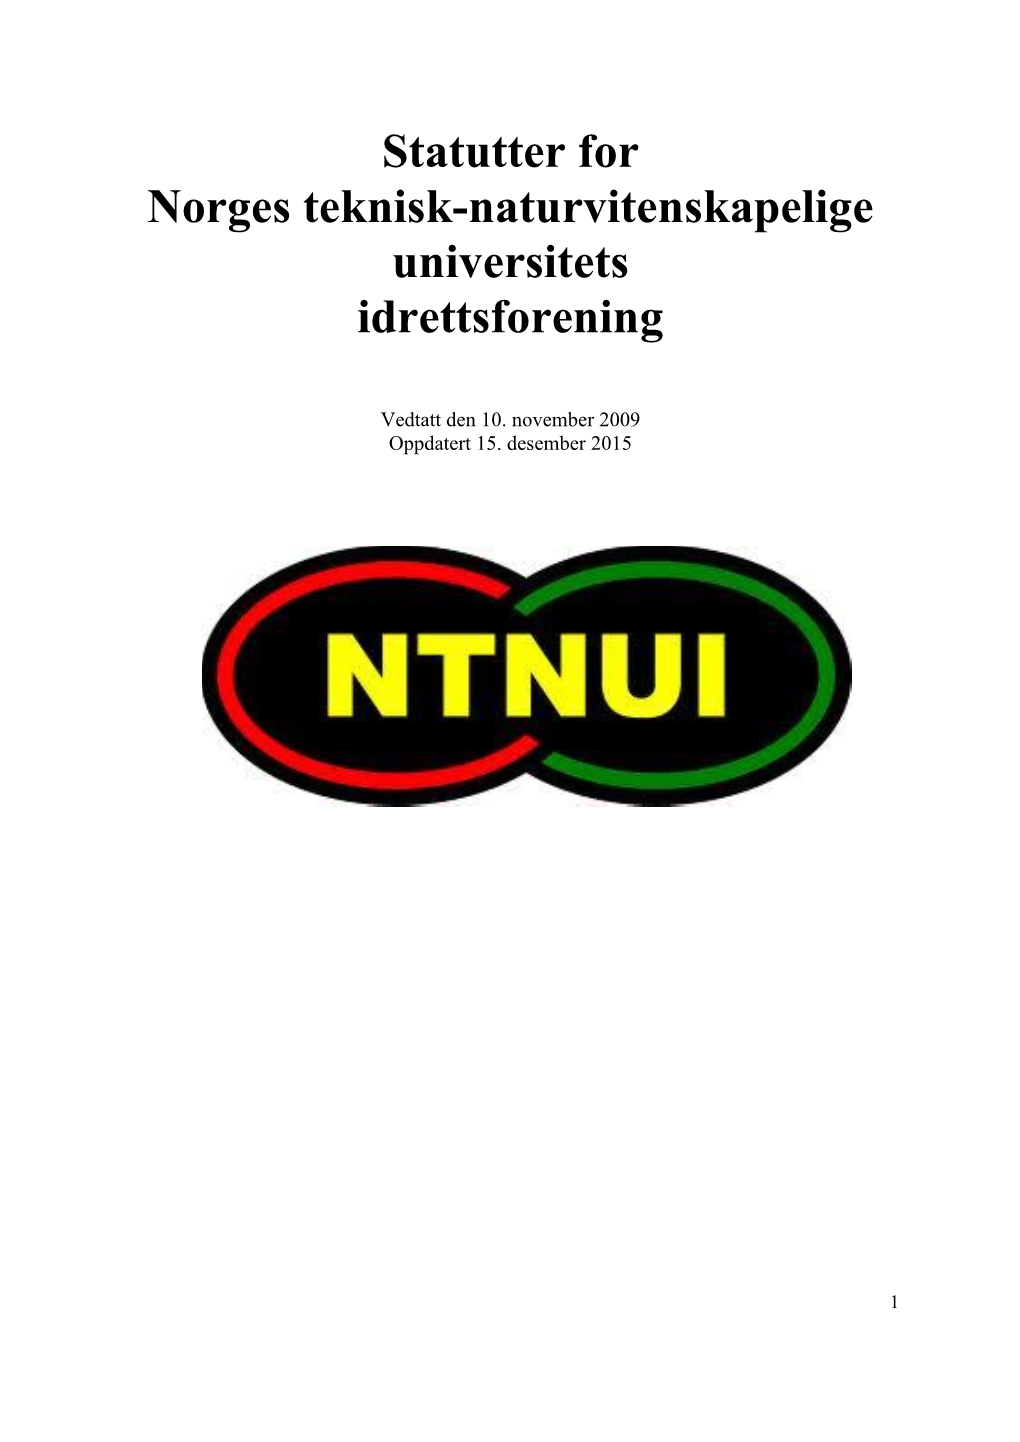 Statutter for Norges Teknisk-Naturvitenskapelige Universitets Idrettsforening